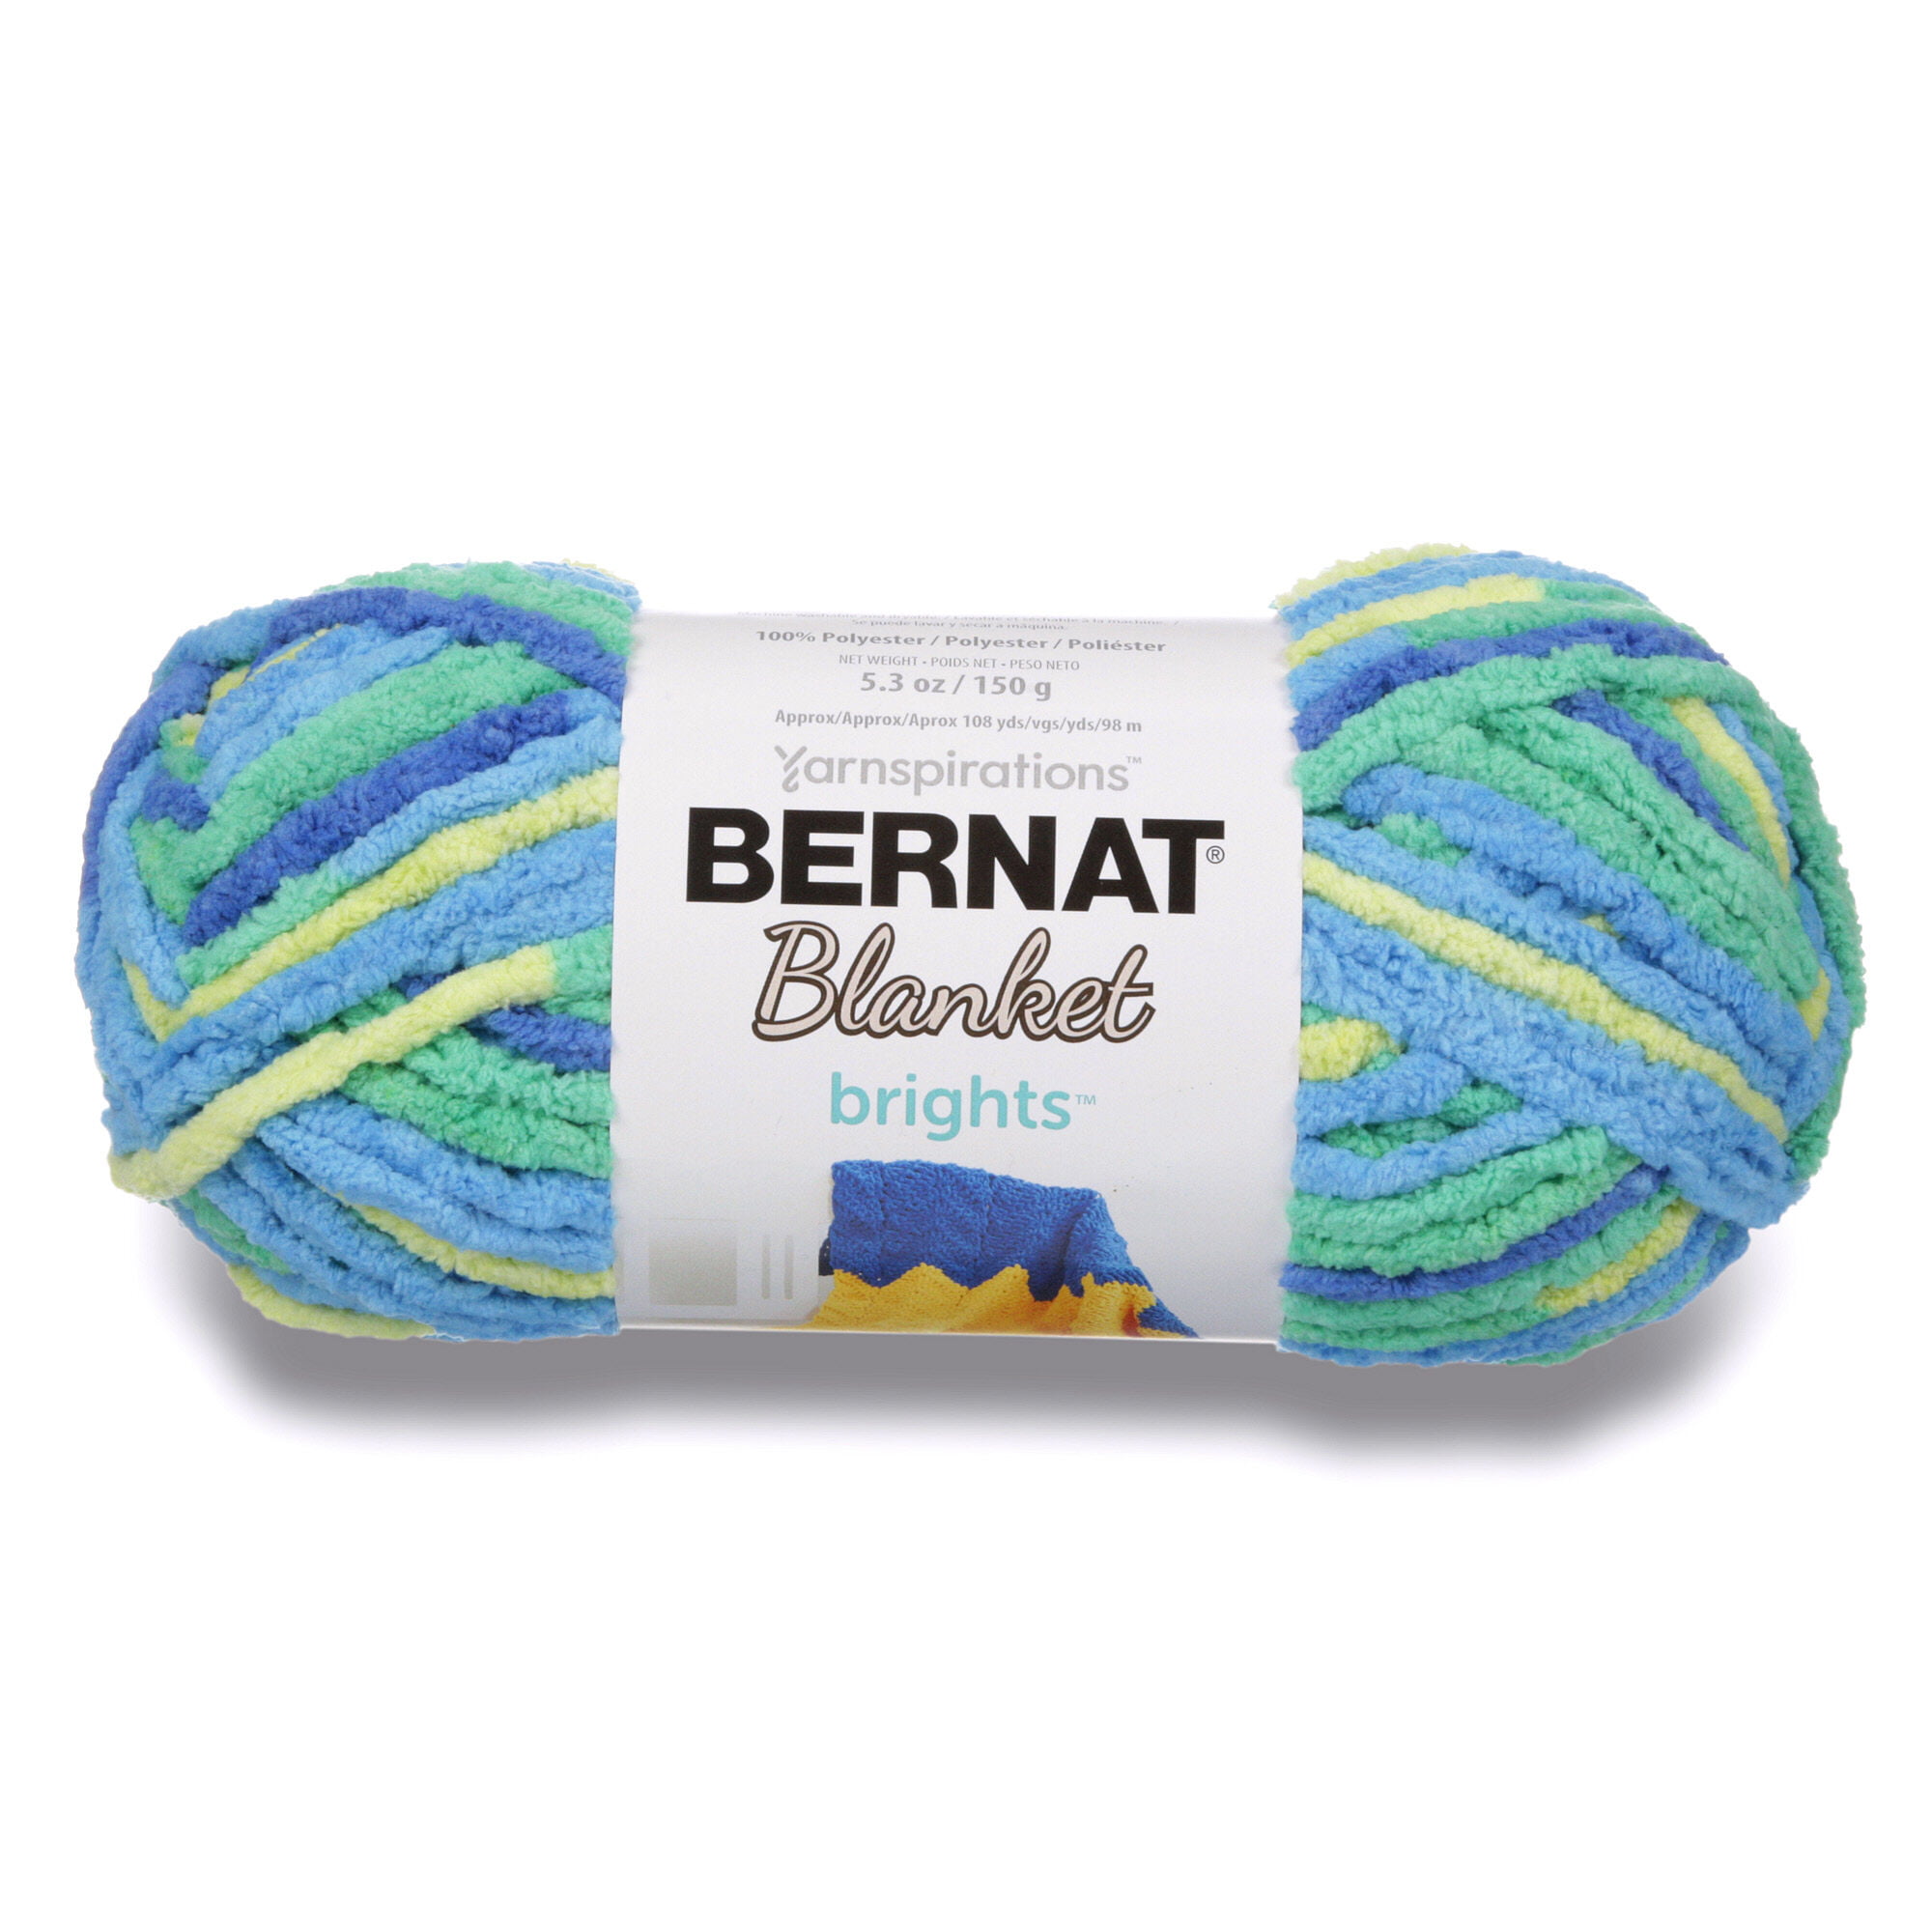 Bernat Blanket Brights 10.5oz—Bag of 2 Yarn Pack